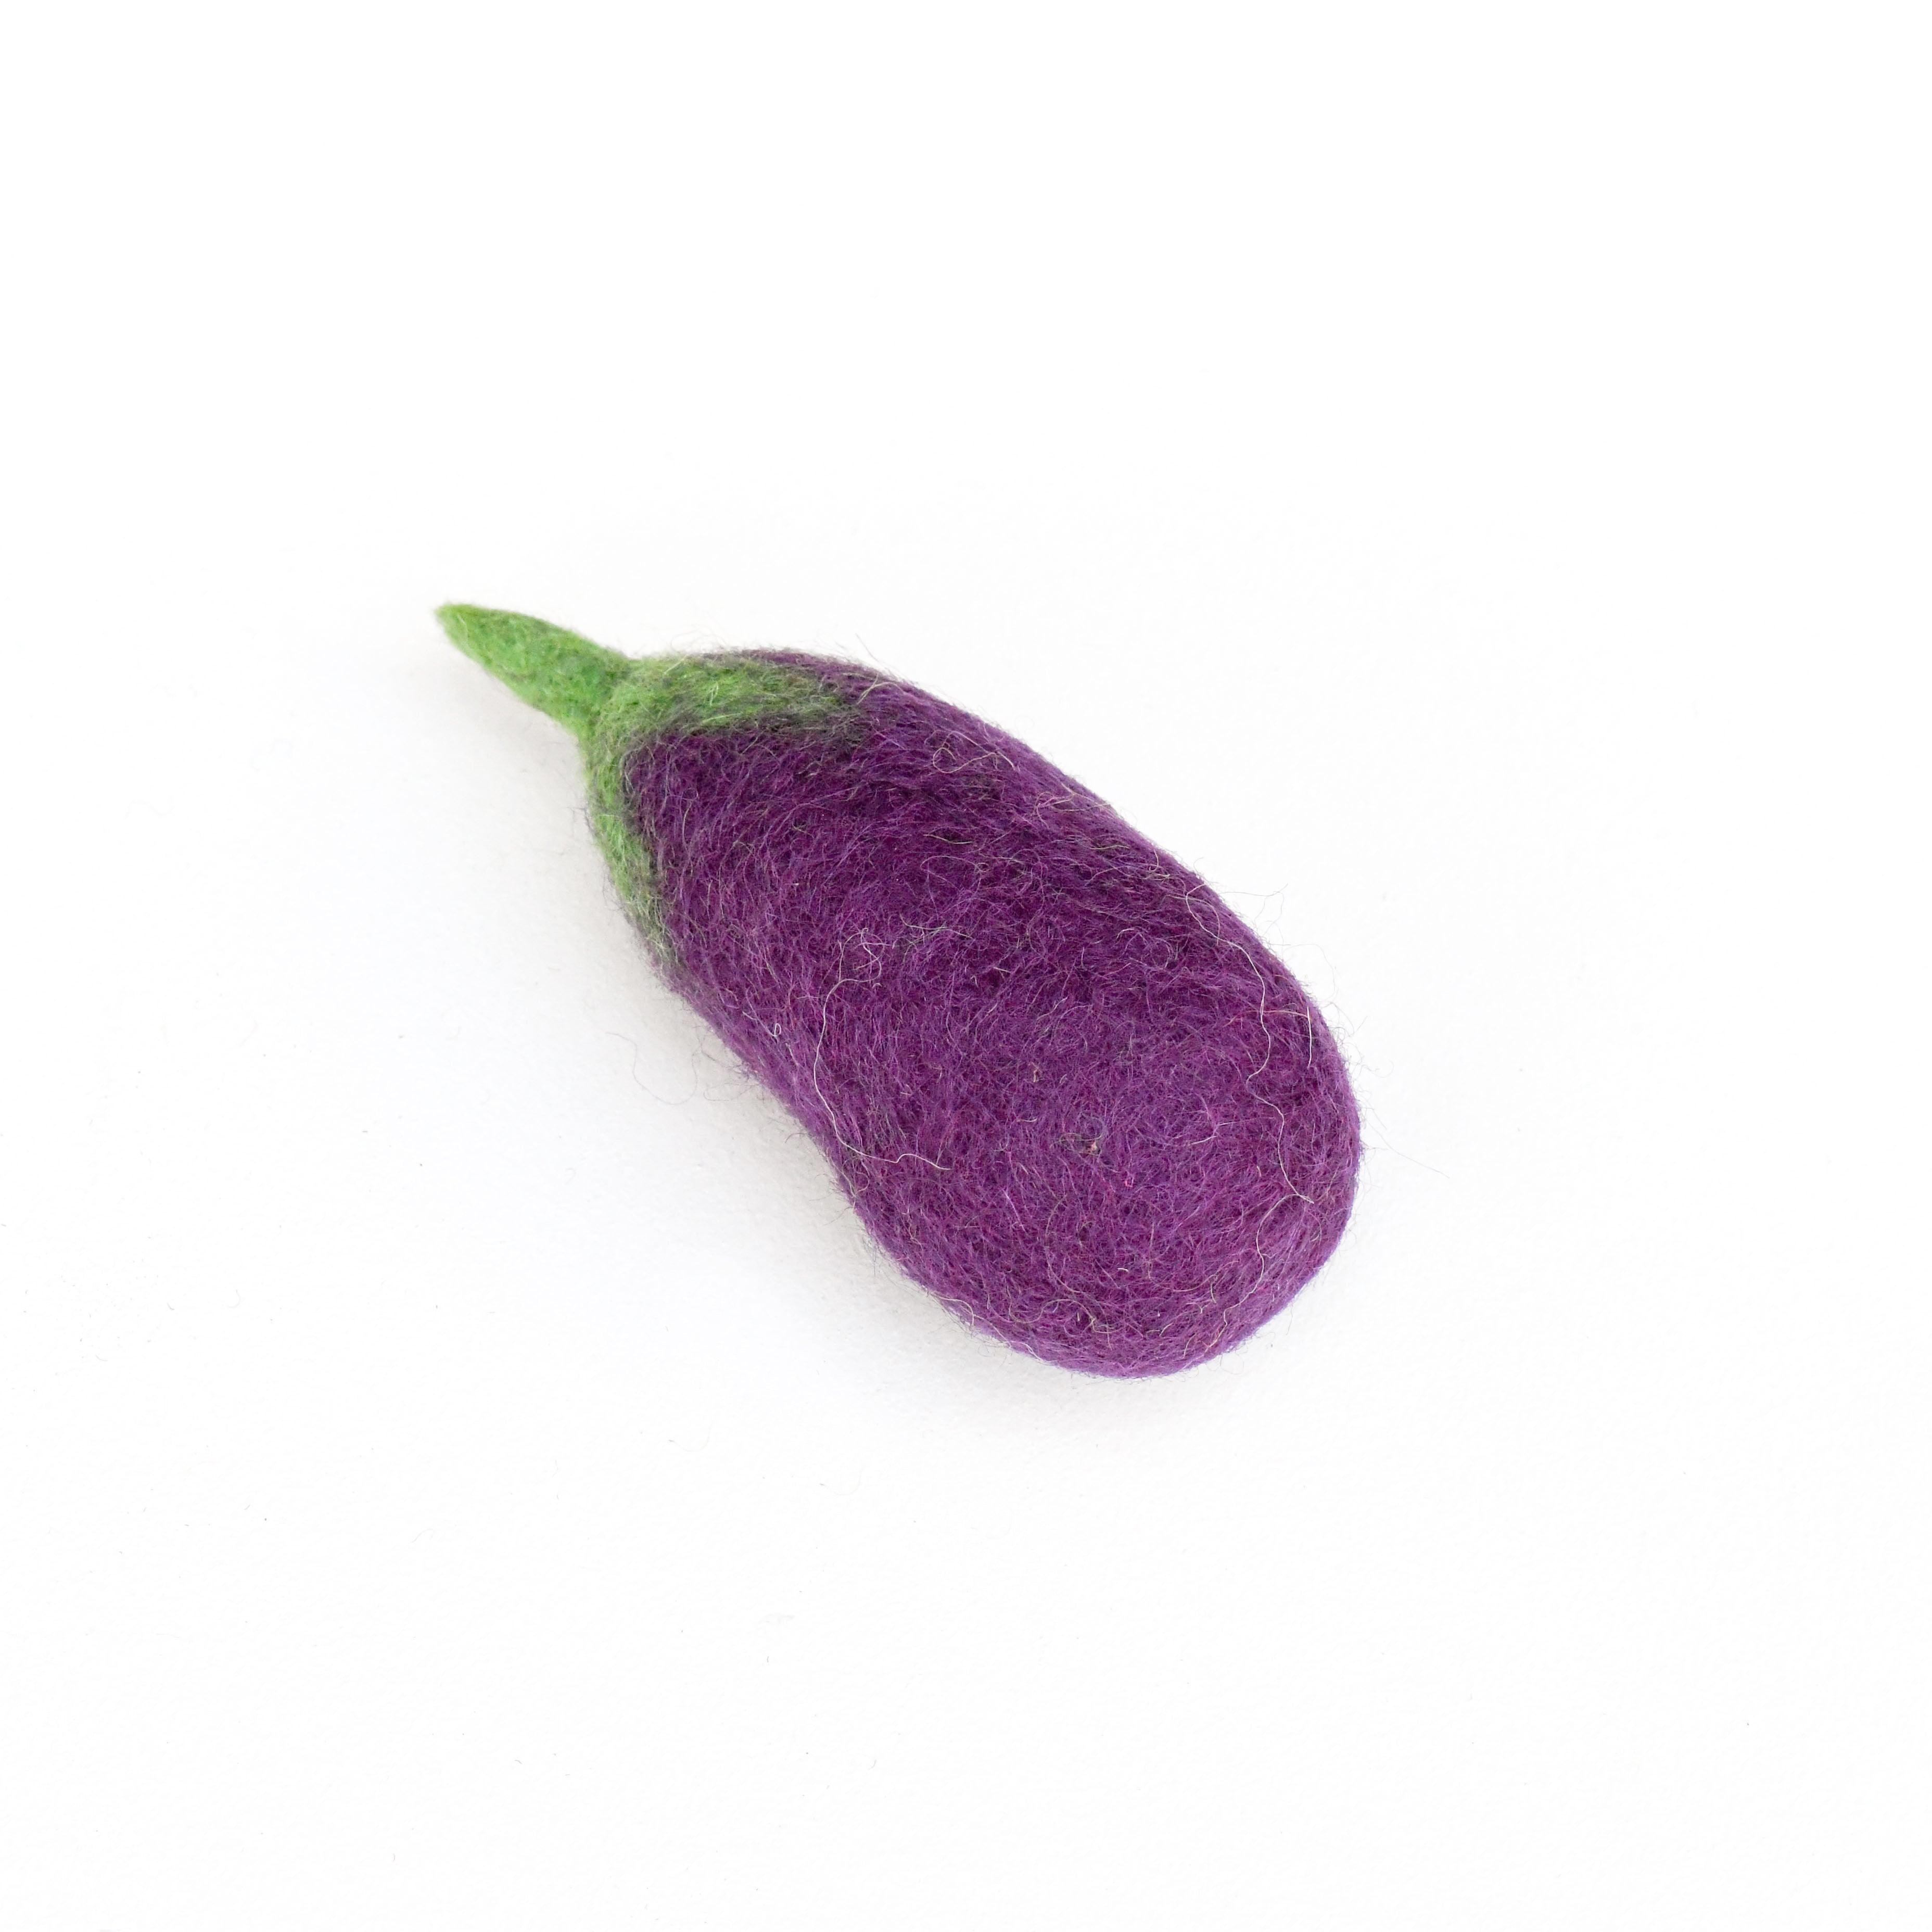 Felt Eggplant - Tara Treasures